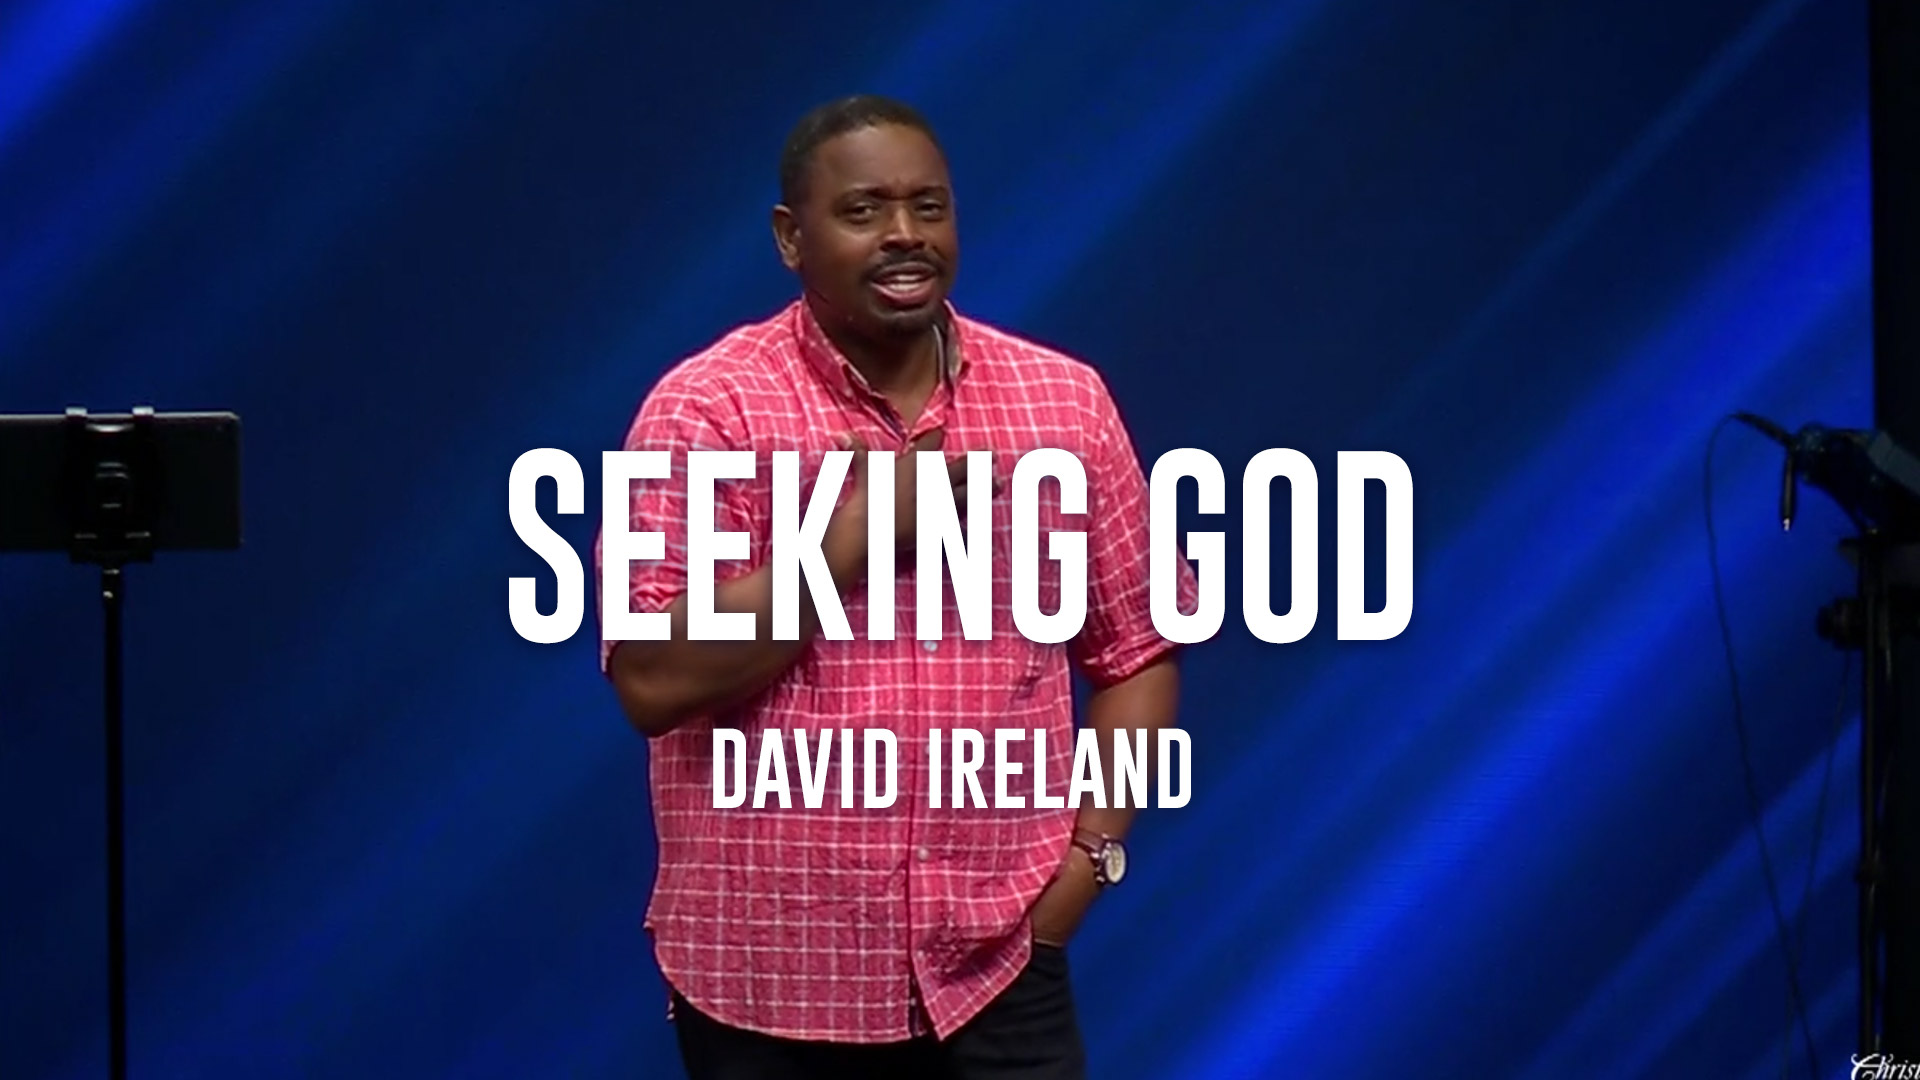 Seeking God